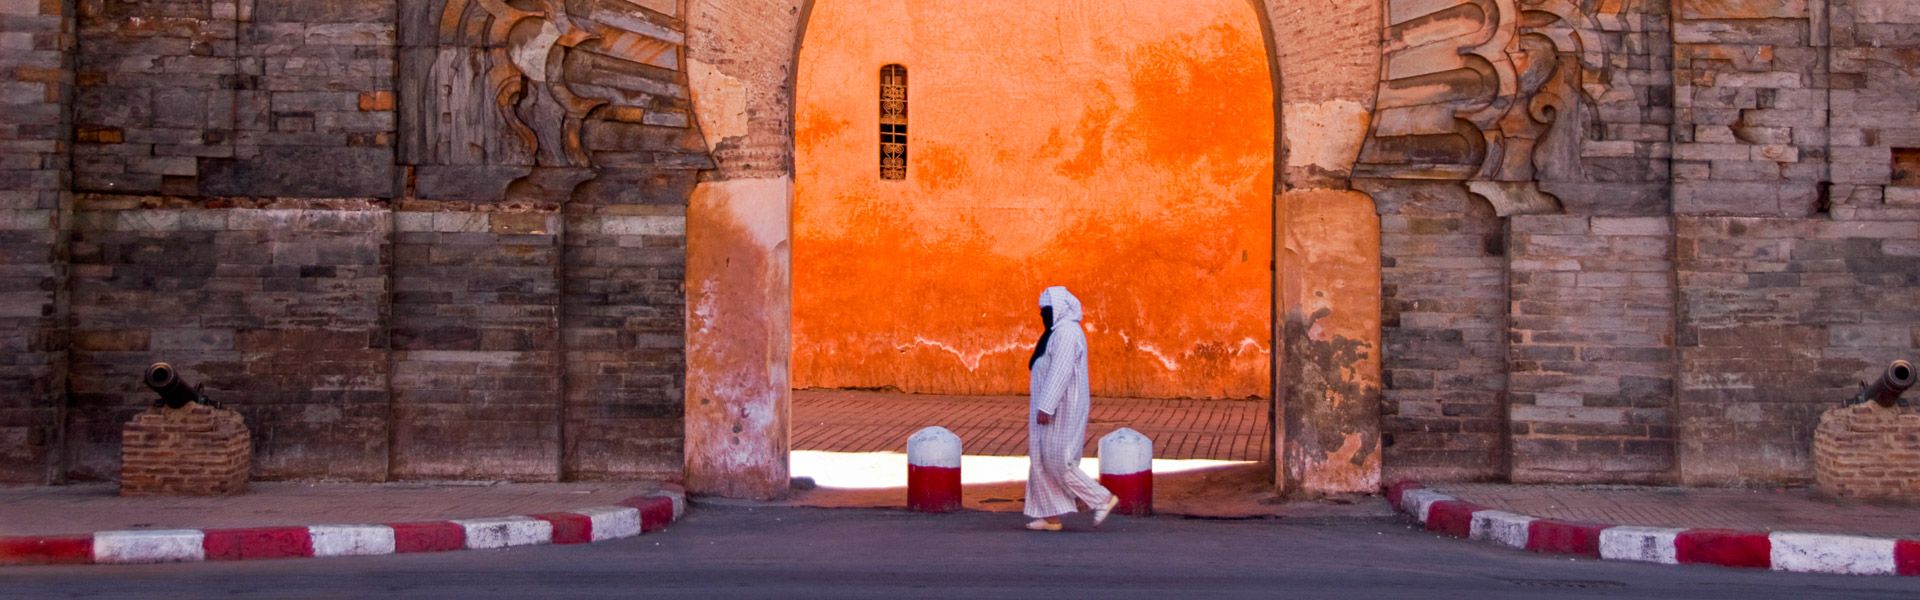 Frau passiert das Bab Agnaou Tor in Marrakesch |  Frank van den Bergh, iStockphoto.com / Chamleon